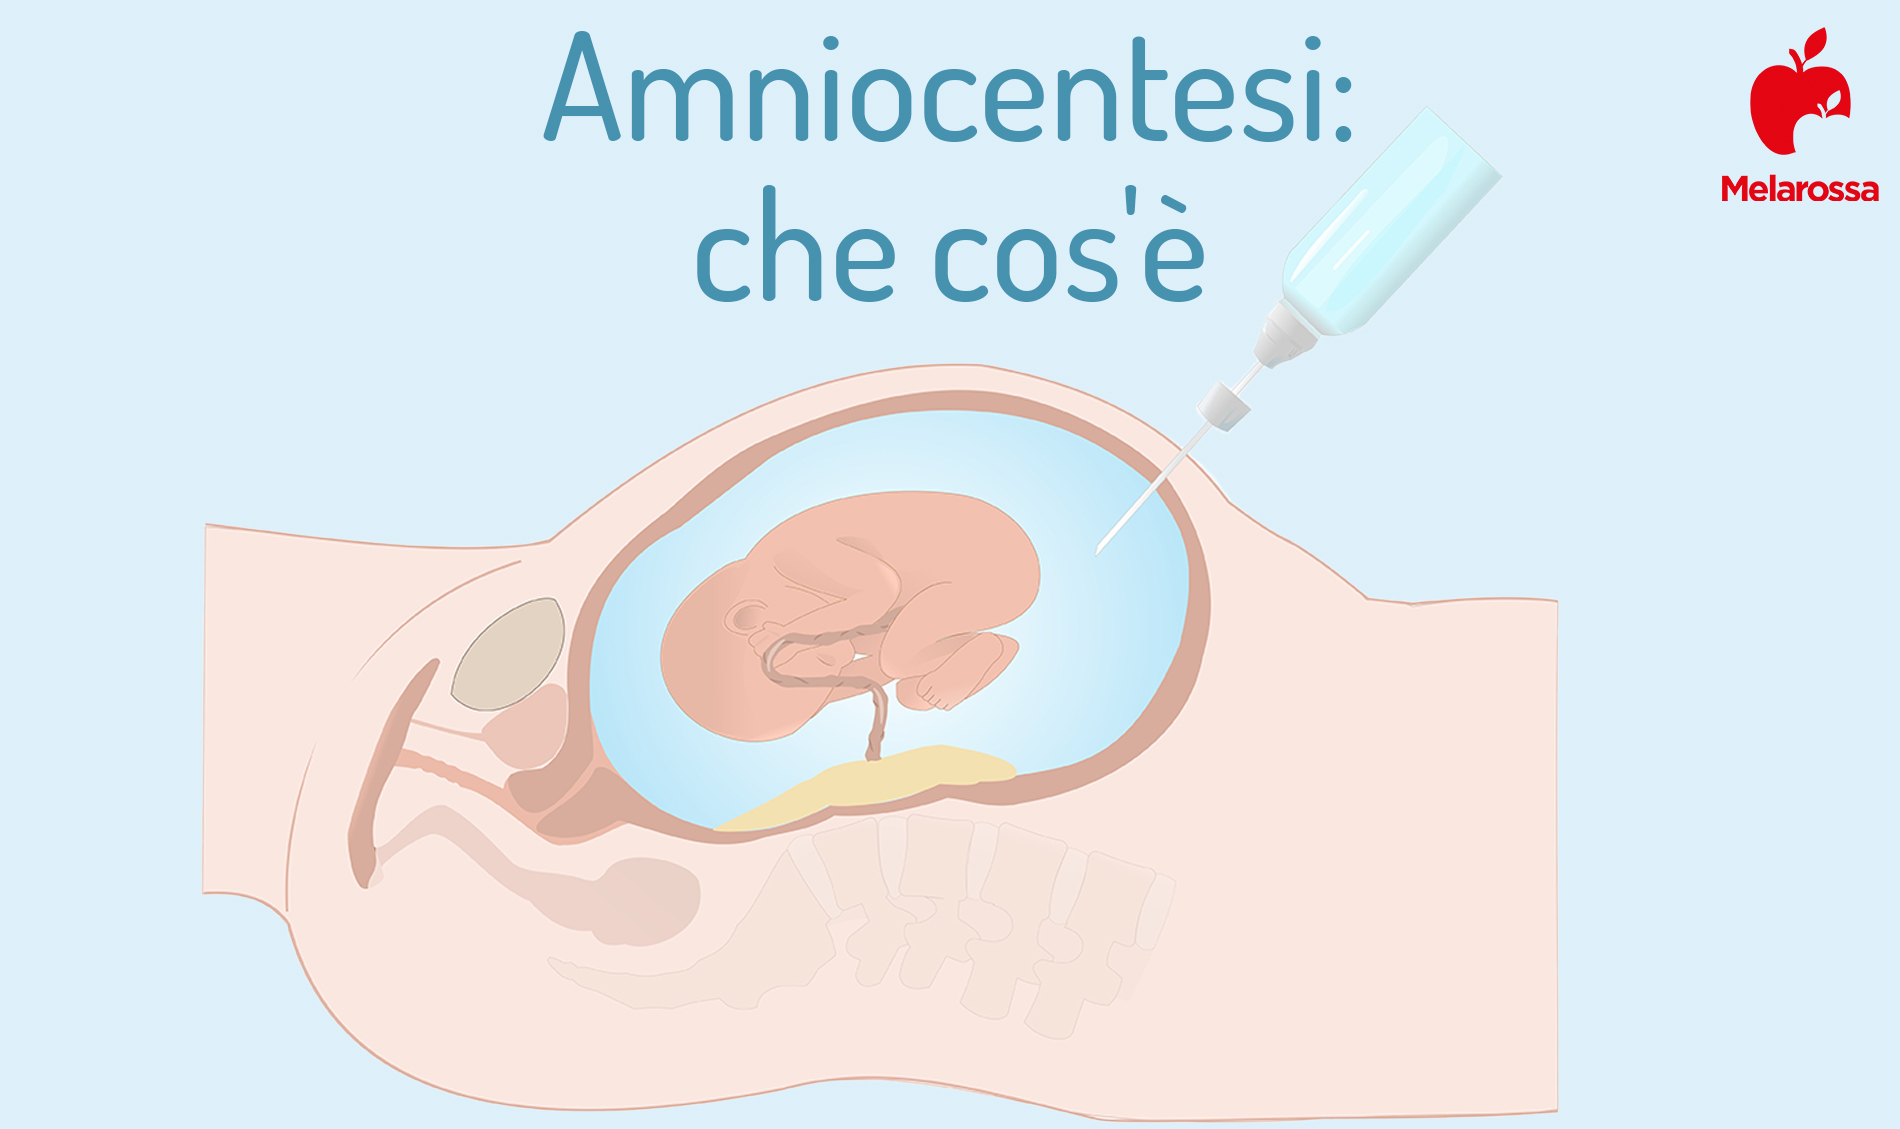 amniocentesi: che cos'è